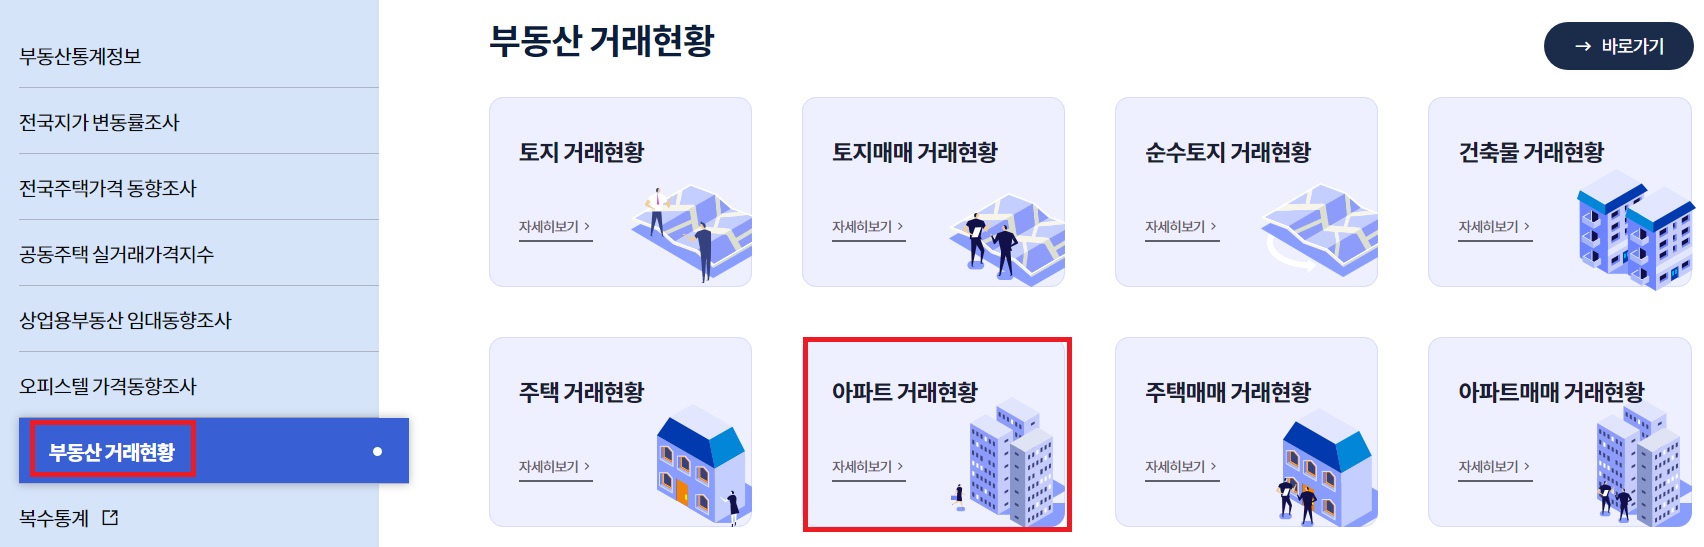 한국부동산원 부동산통계정보시스템 서울 아파트 거래량 조회방법 - &#39;부동산 거래현황&#39; 및 &#39;아파트 거래현황&#39;을 선택